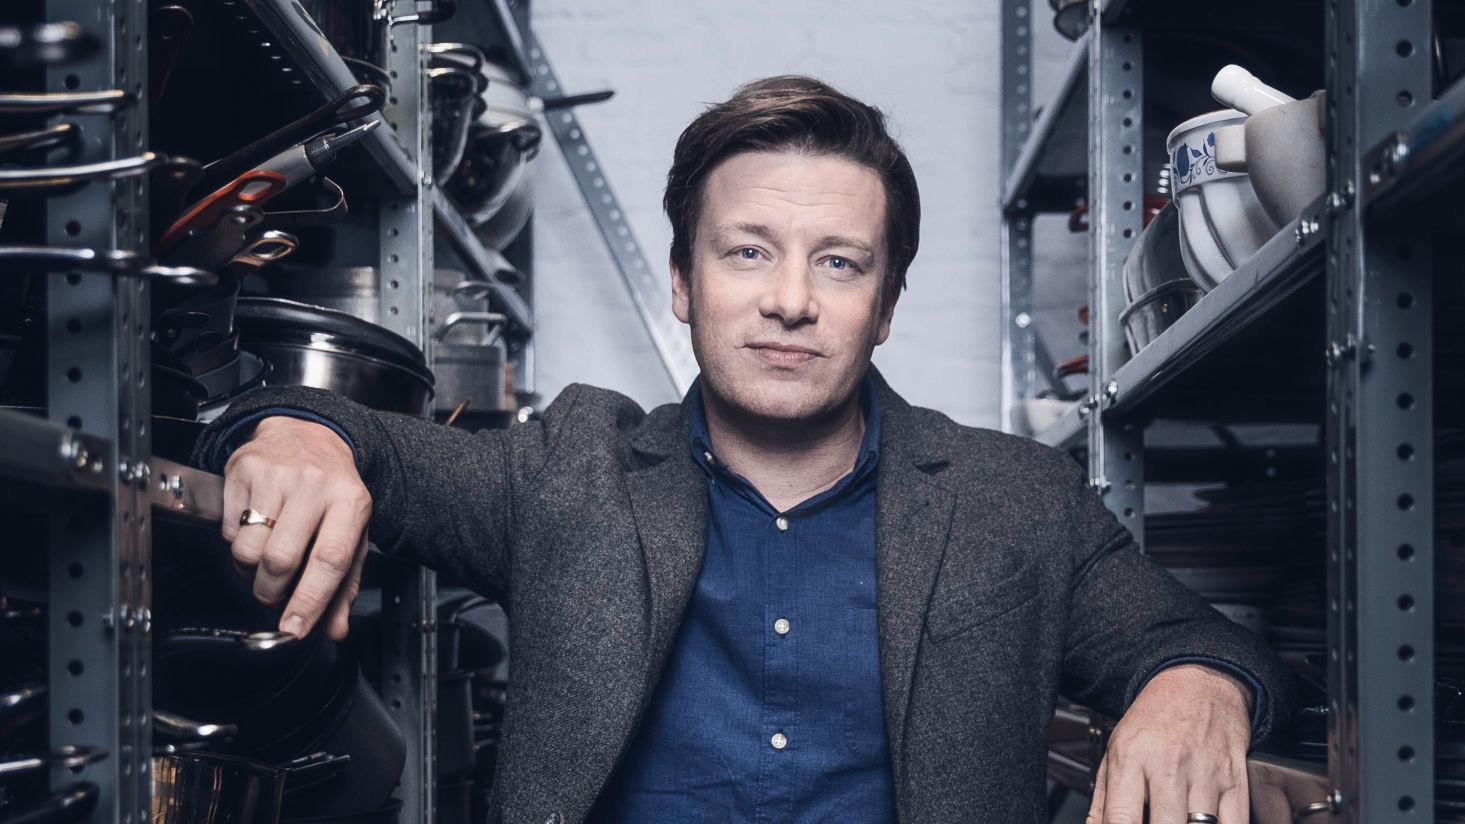 TØFF START: Jamie Oliver ble først kjent som TV-kokk i programmet «The naked chef». Ikke alle likte at han, som mann, lagde mat. Foto: Krister Sørbø/VG